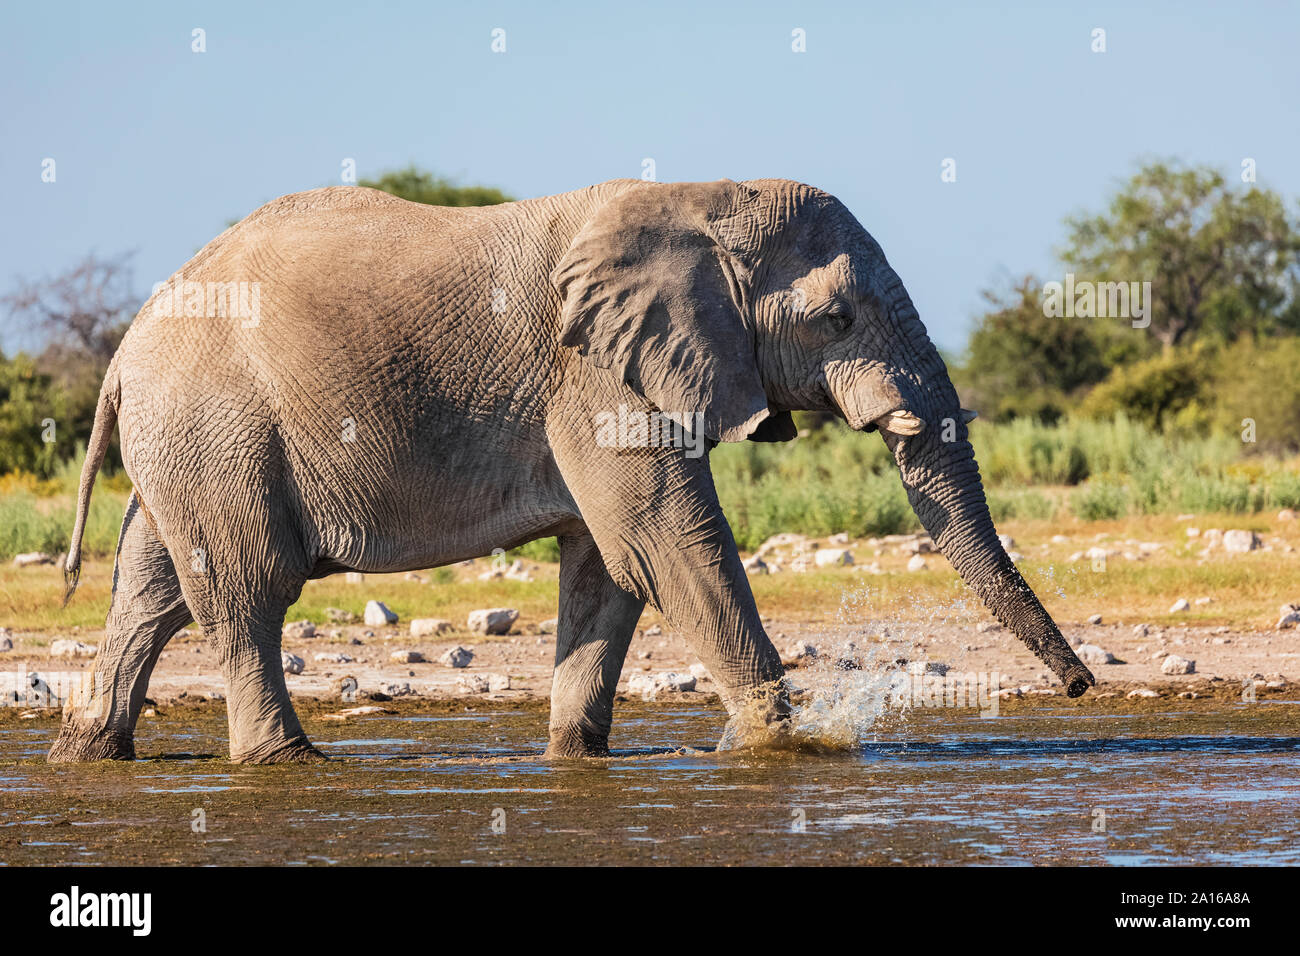 Namibia, Etosha National Park, African Elephant walking through waterhole Stock Photo